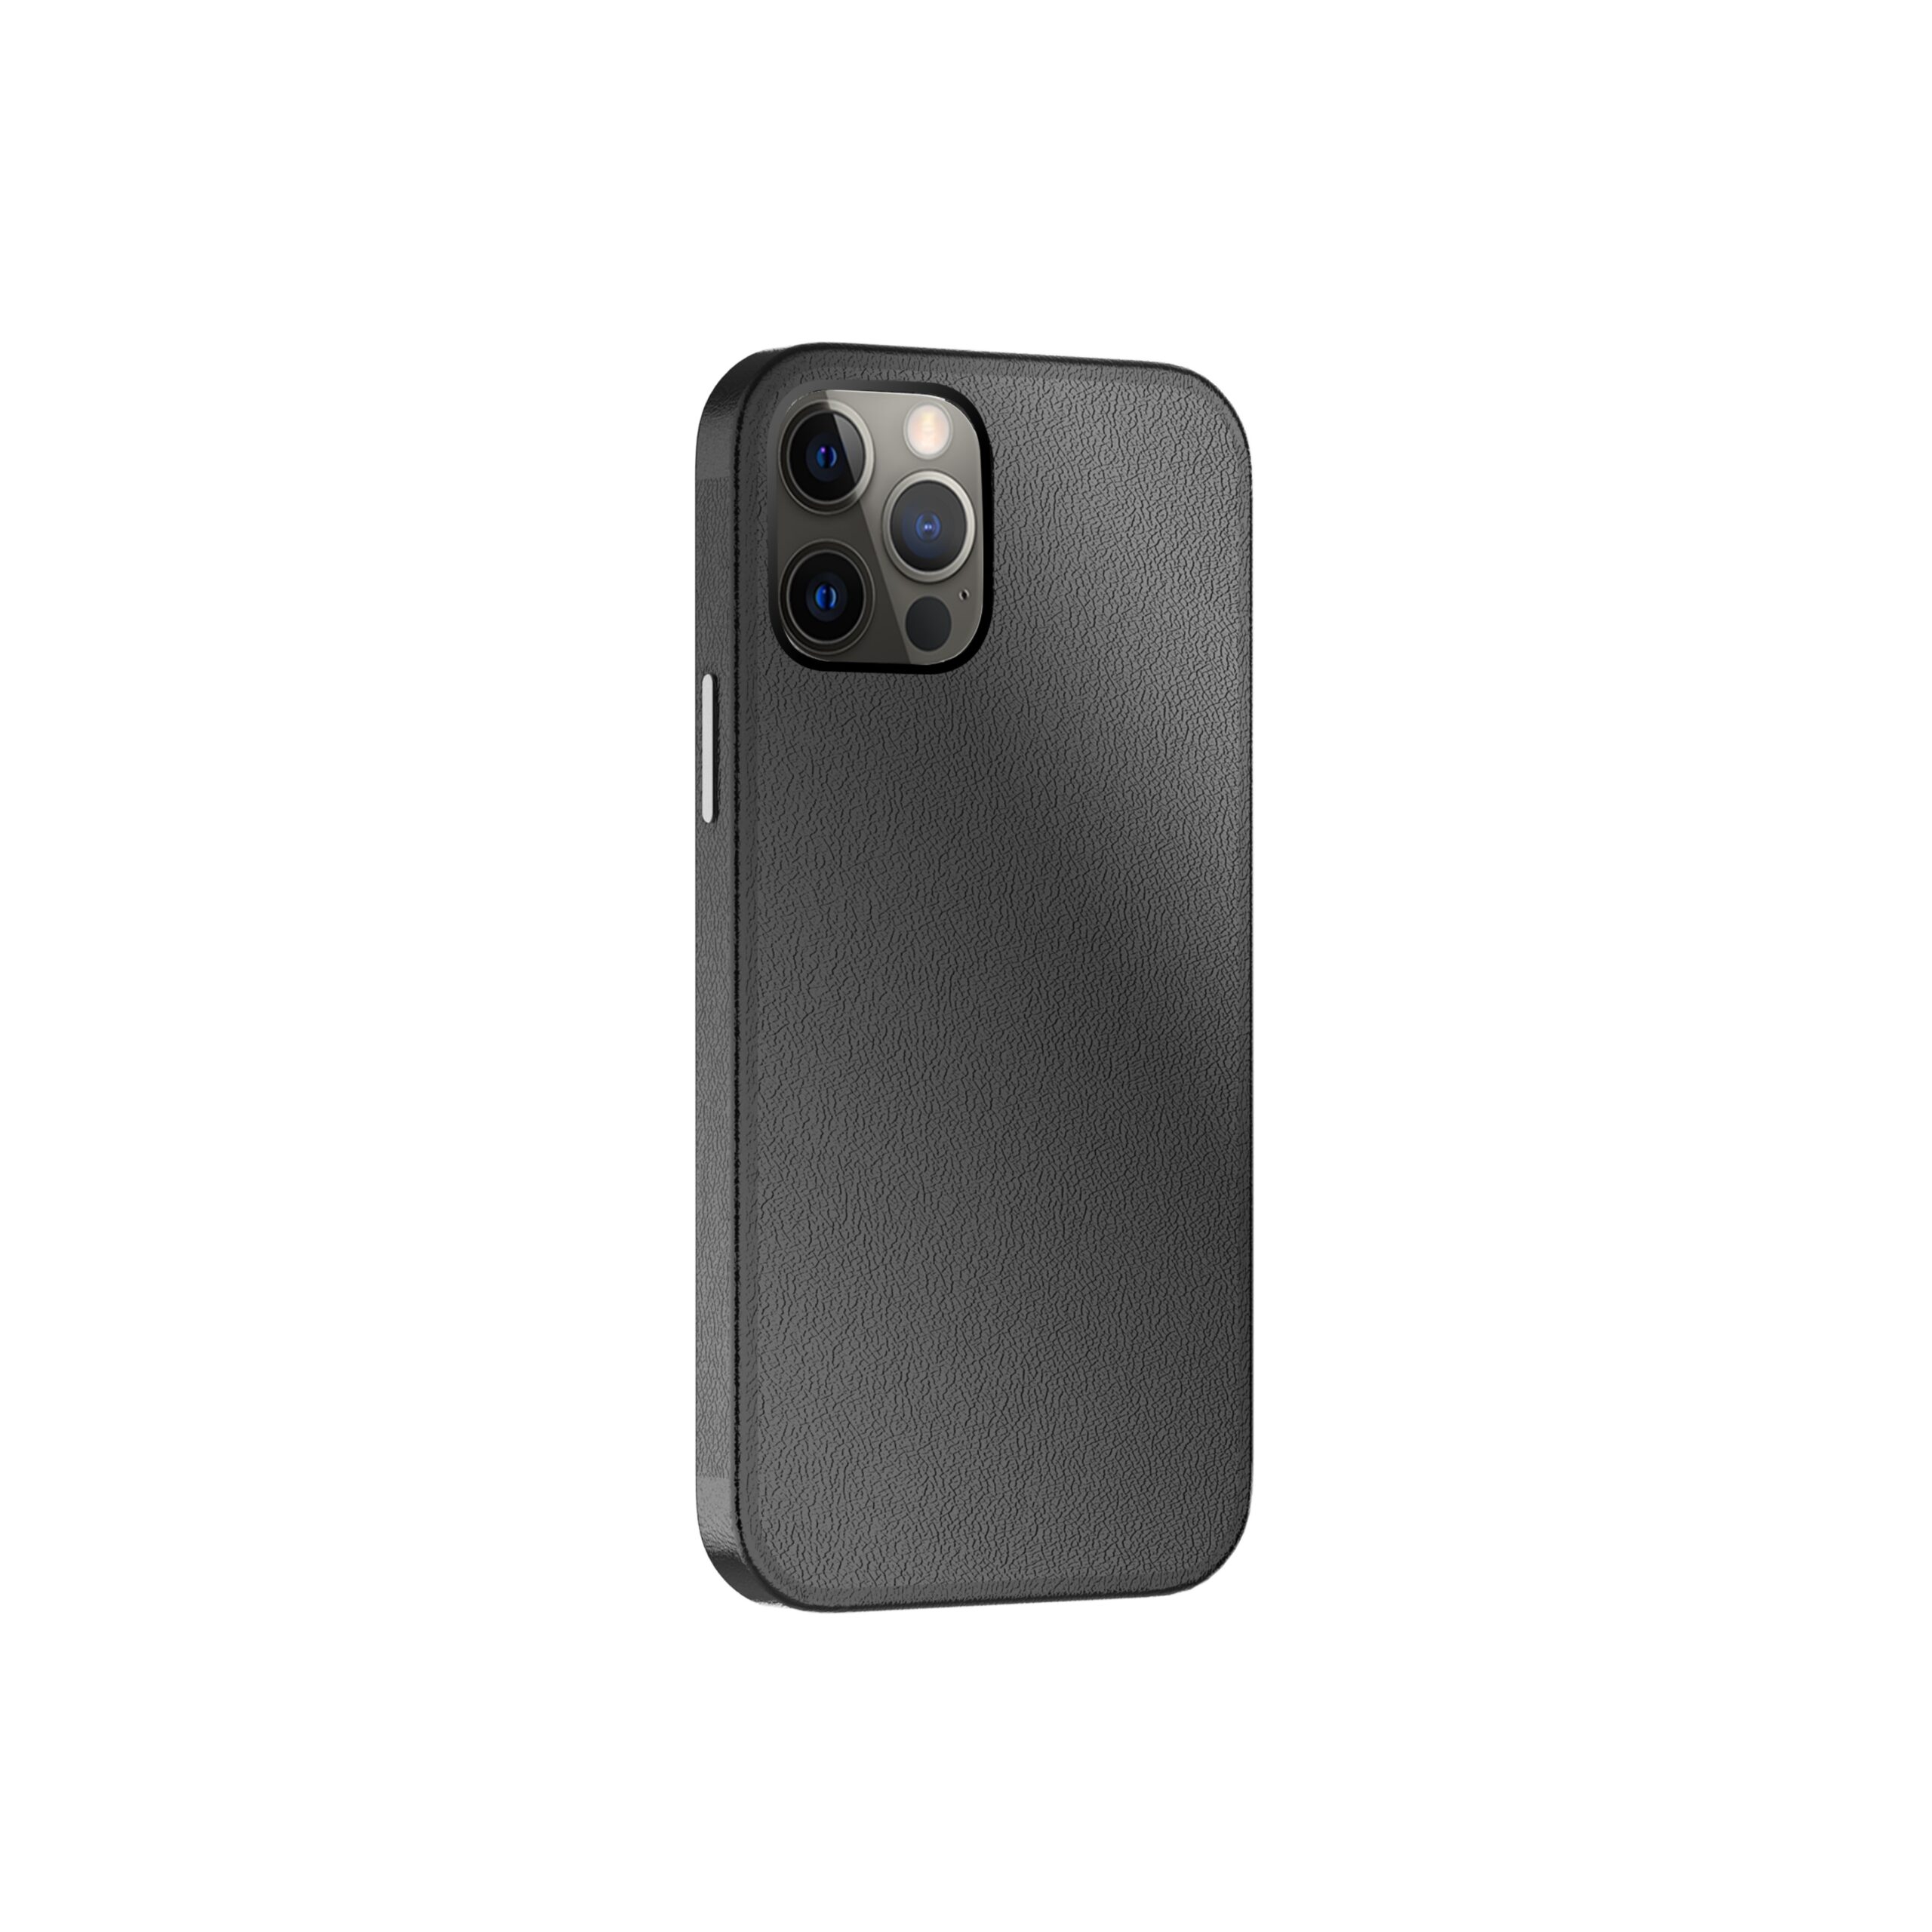 كفر جوال ايفون ( ماج سيف ) - أسود  Green - Luju MagSafe Leather Case for iPhone 12 / 12 Pro 6.1"